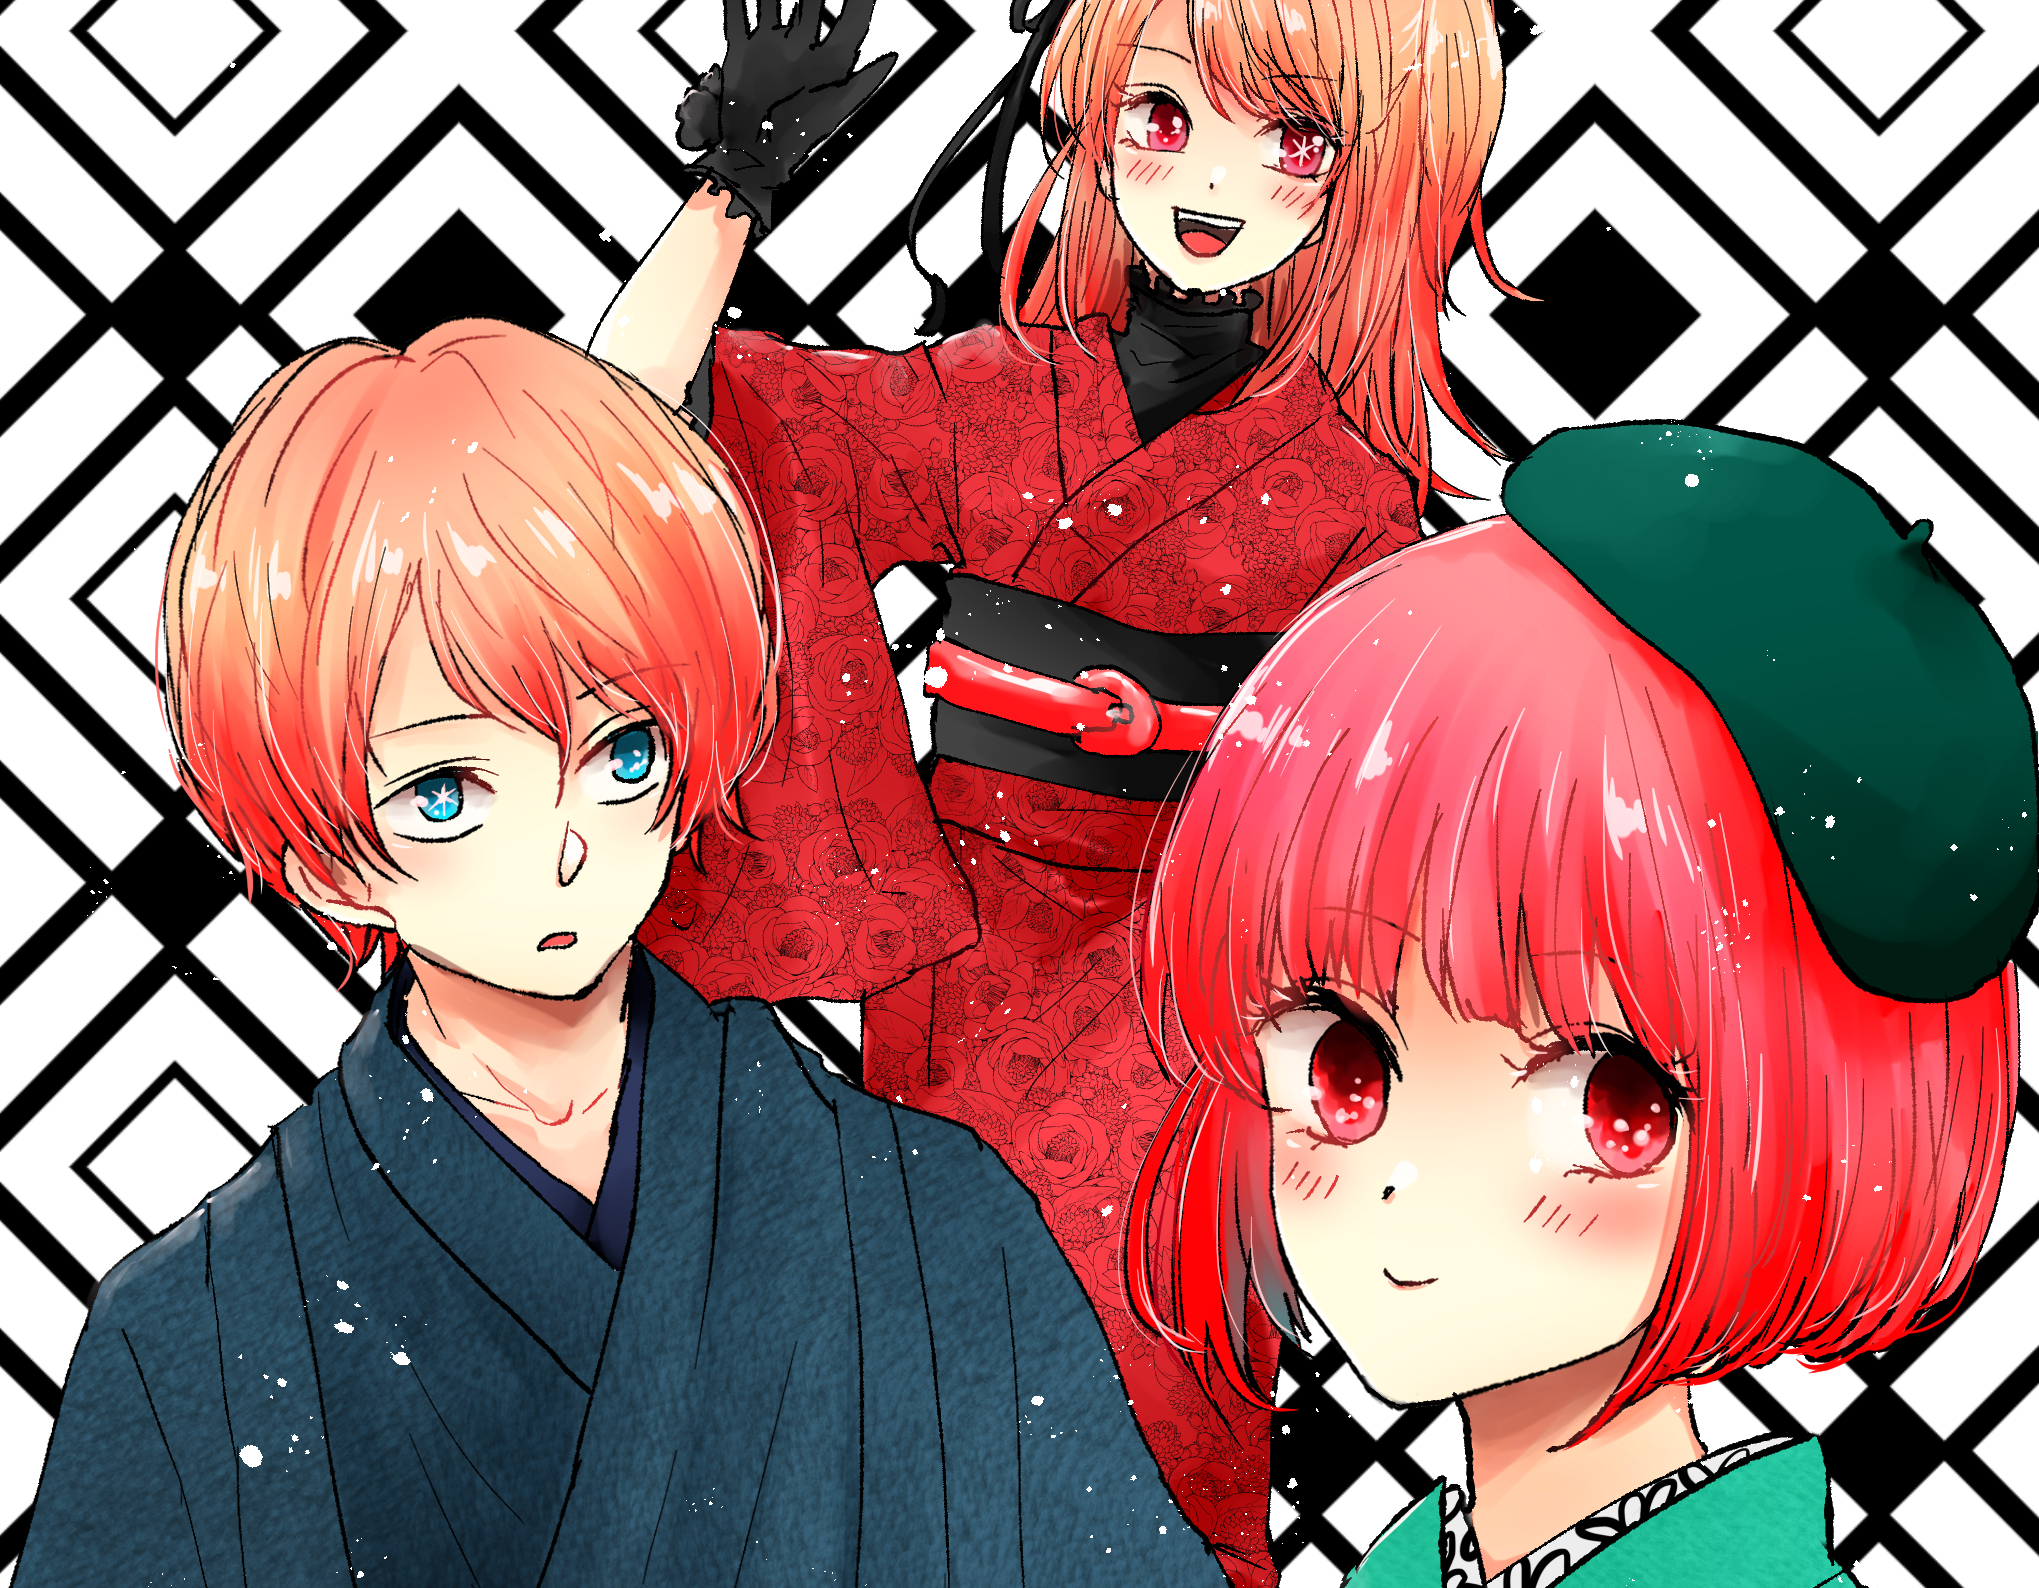 Anime Oshi no Ko HD Wallpaper